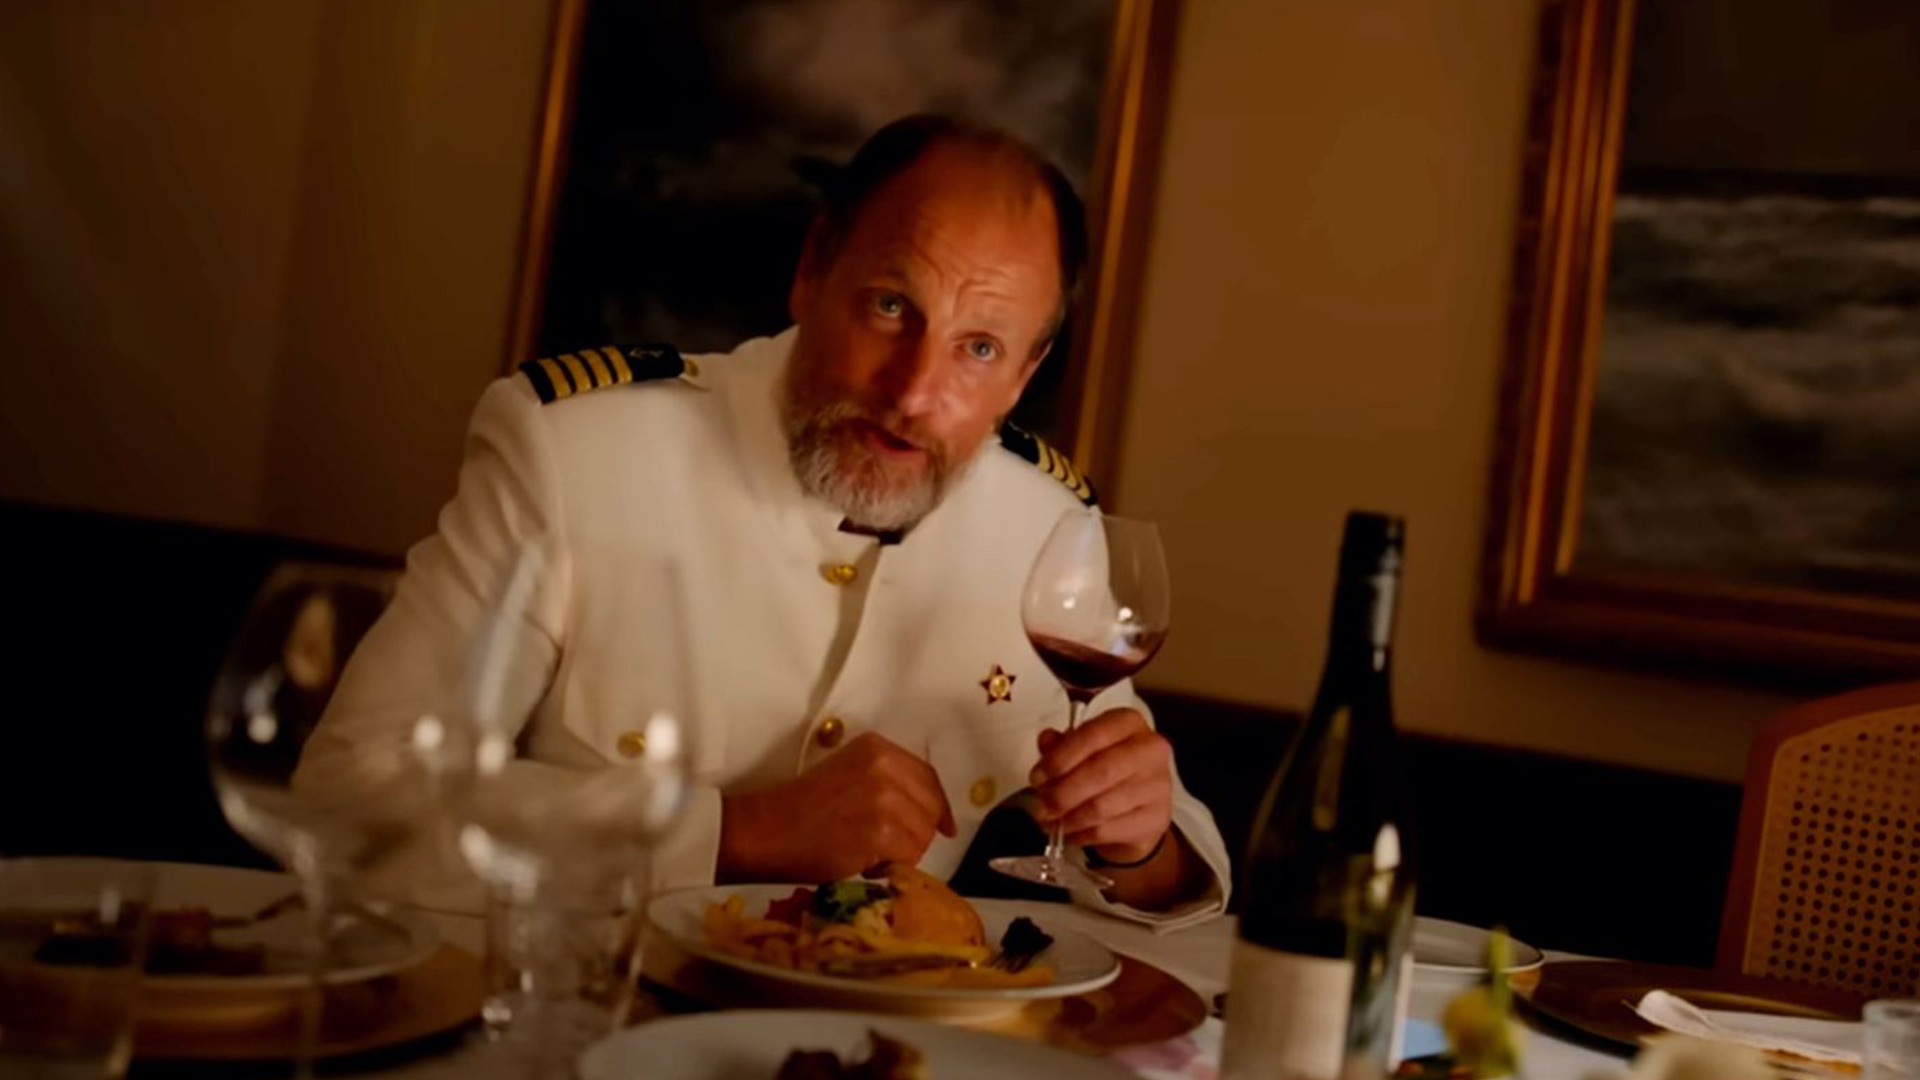 کاپیتان در حال خوردن غذا در فیلم مثلث غم